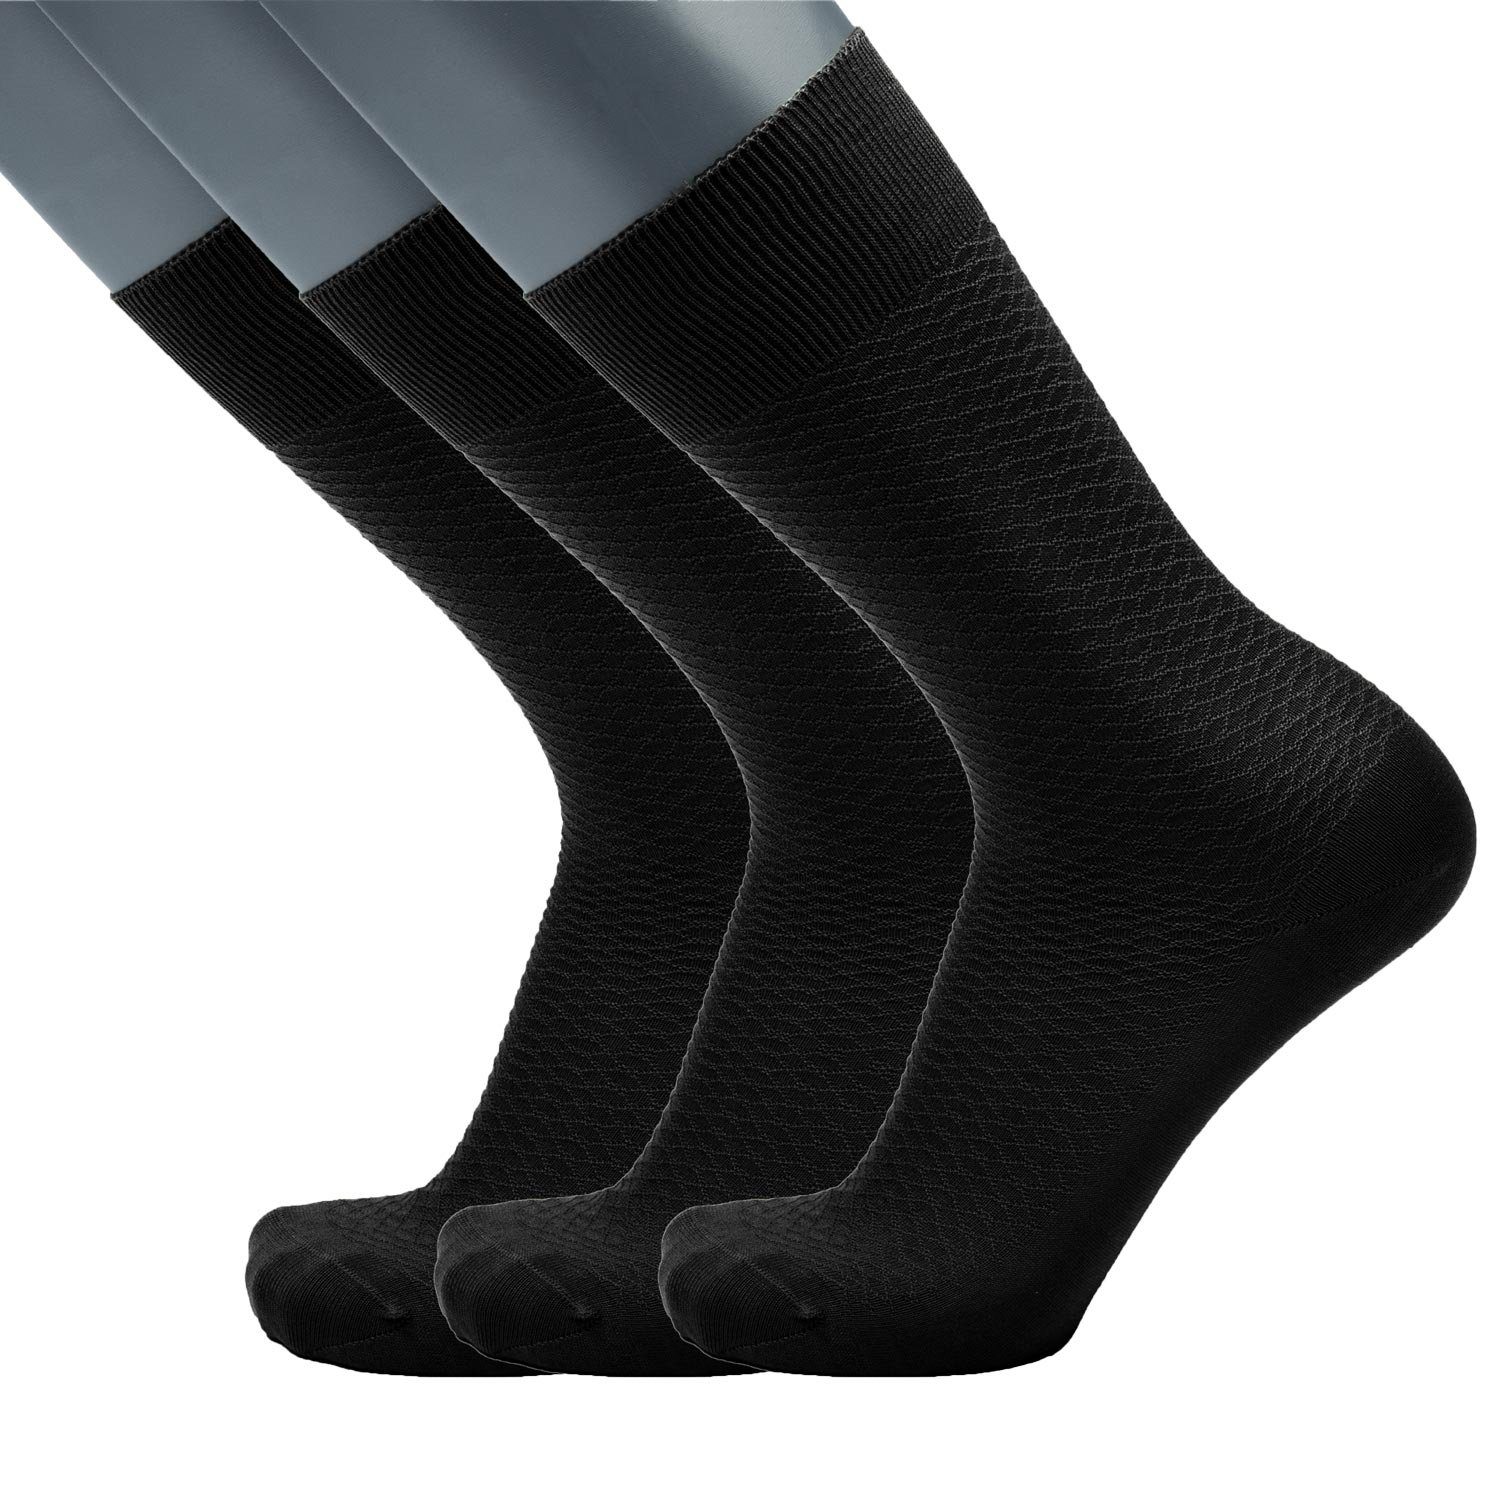 reiner Baumwolle (3er Classic Packung) merzerisierter Socken aus BGENTS 3er Schwarz - Frankfurt 3er Socken Packung, Businesssocken